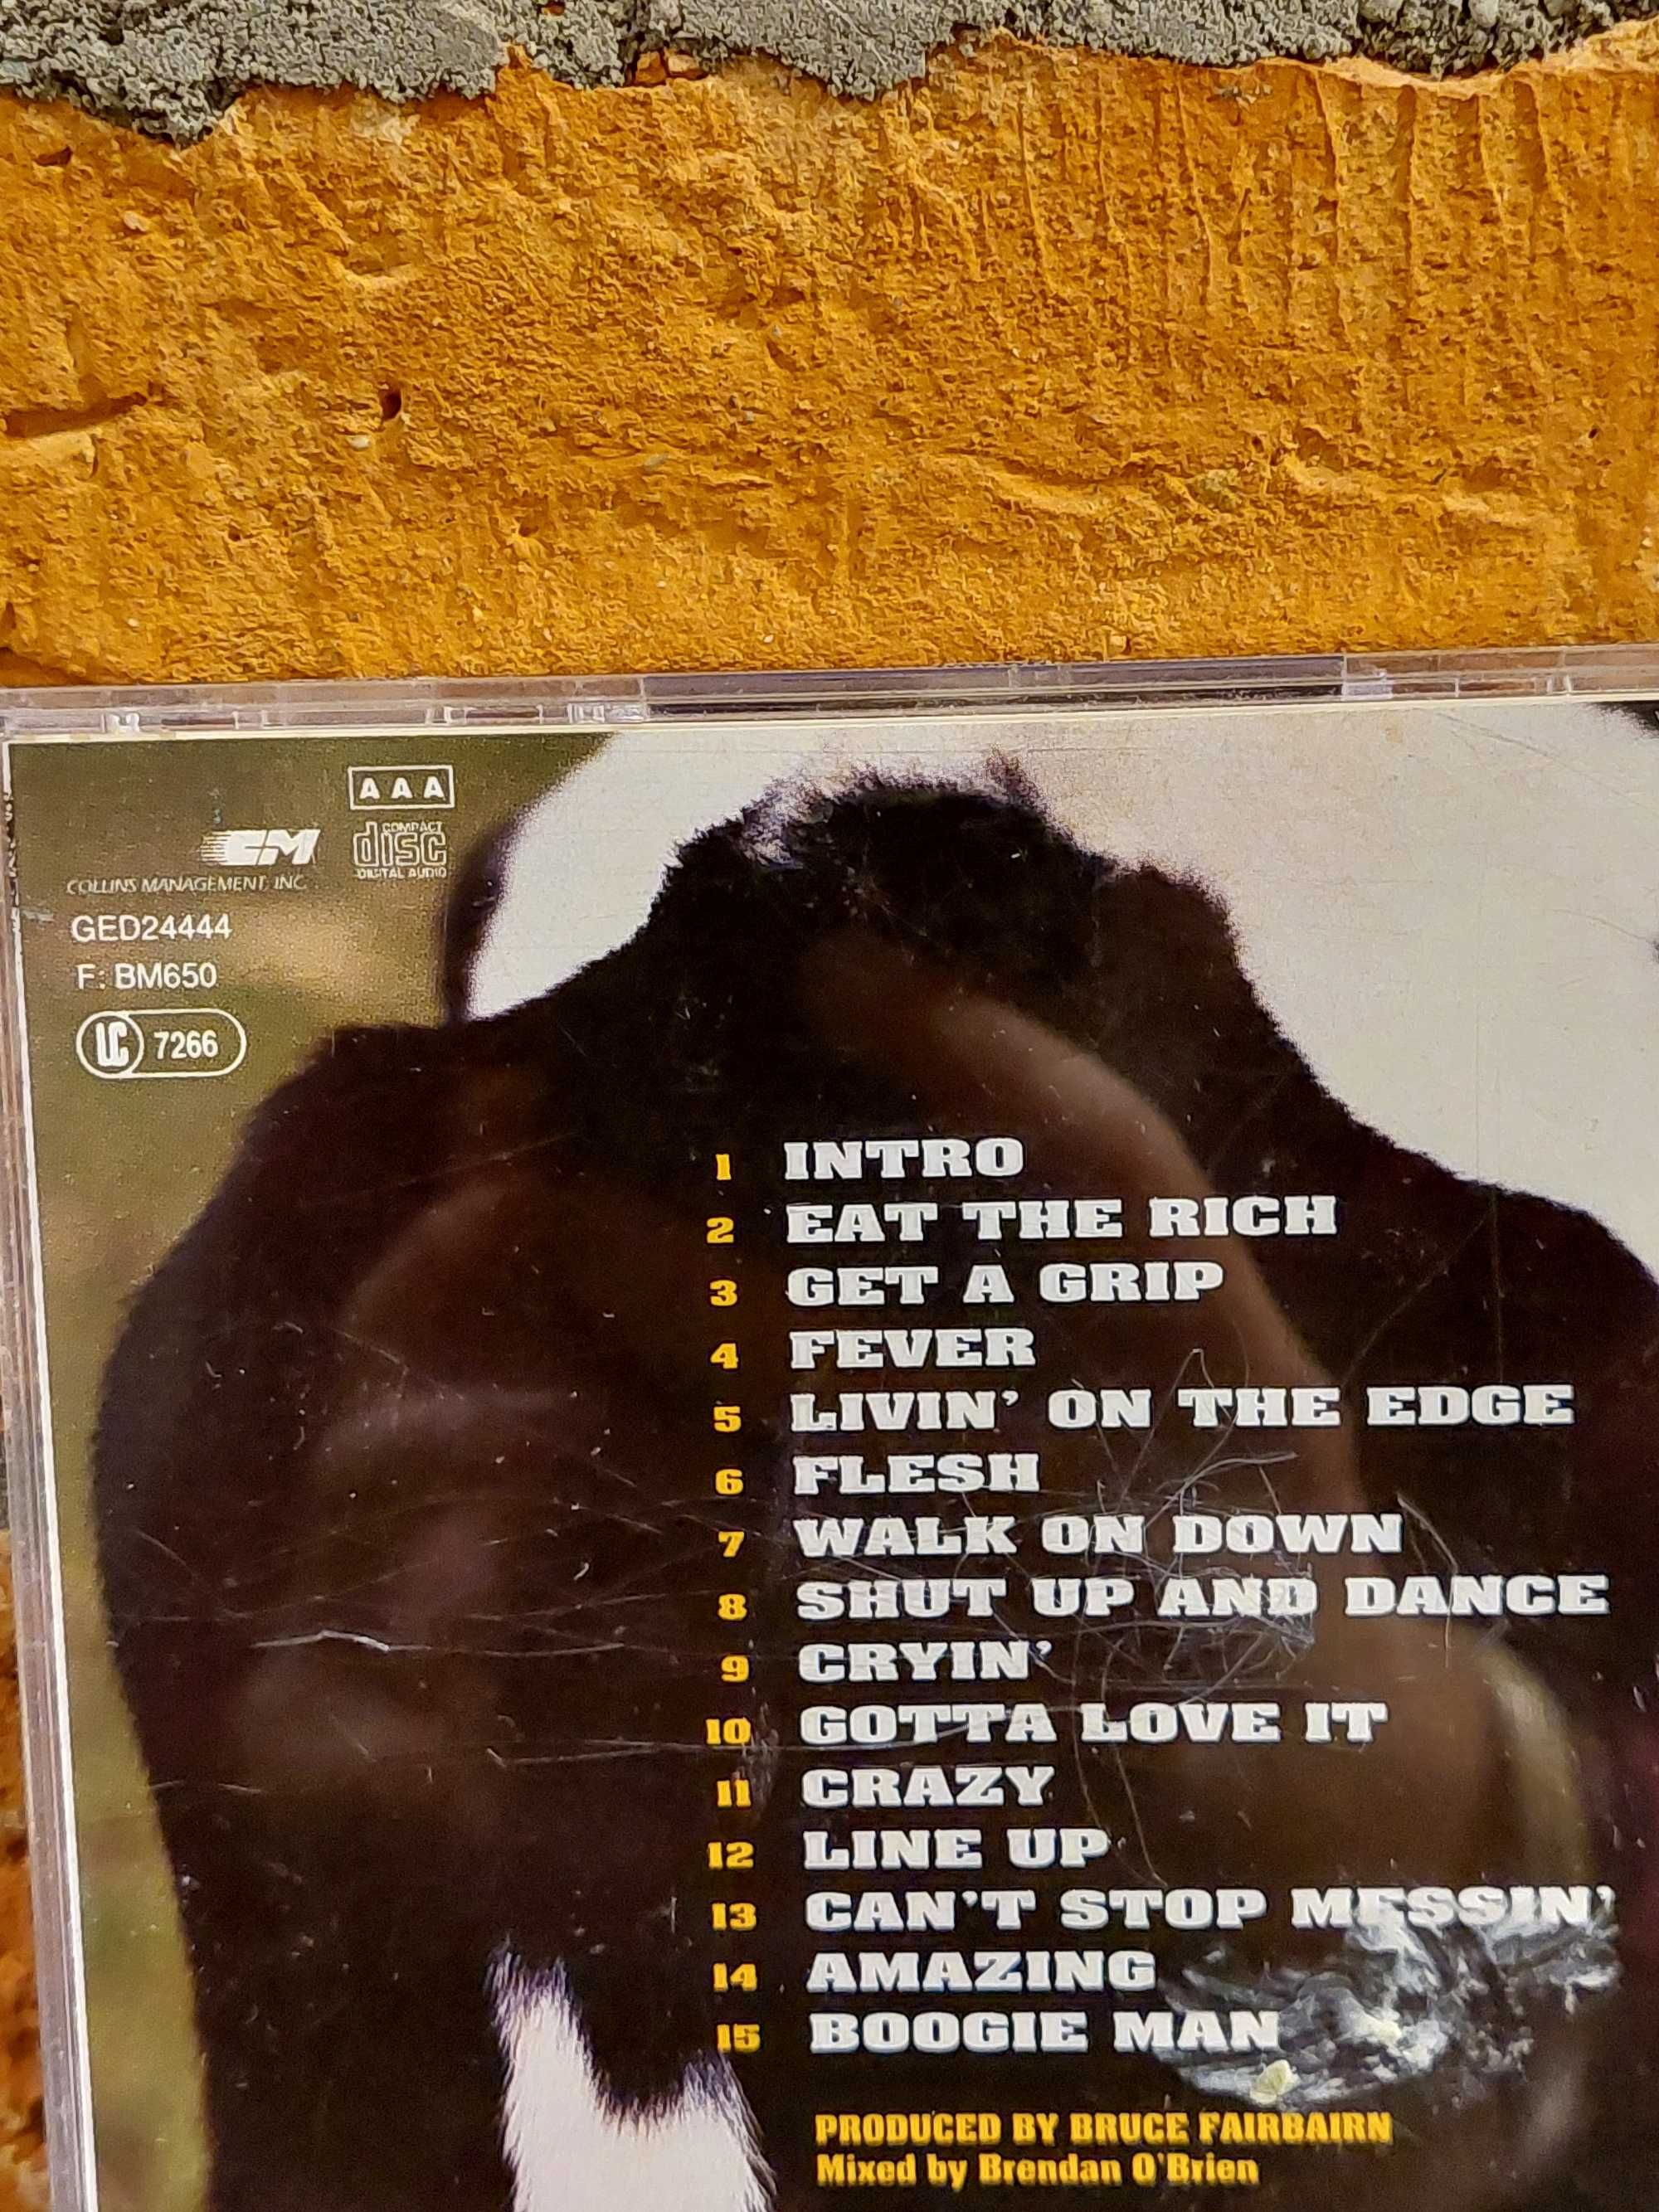 Płyta CD audio Aerosmith Get a Grip 1993 GED24444 orygina